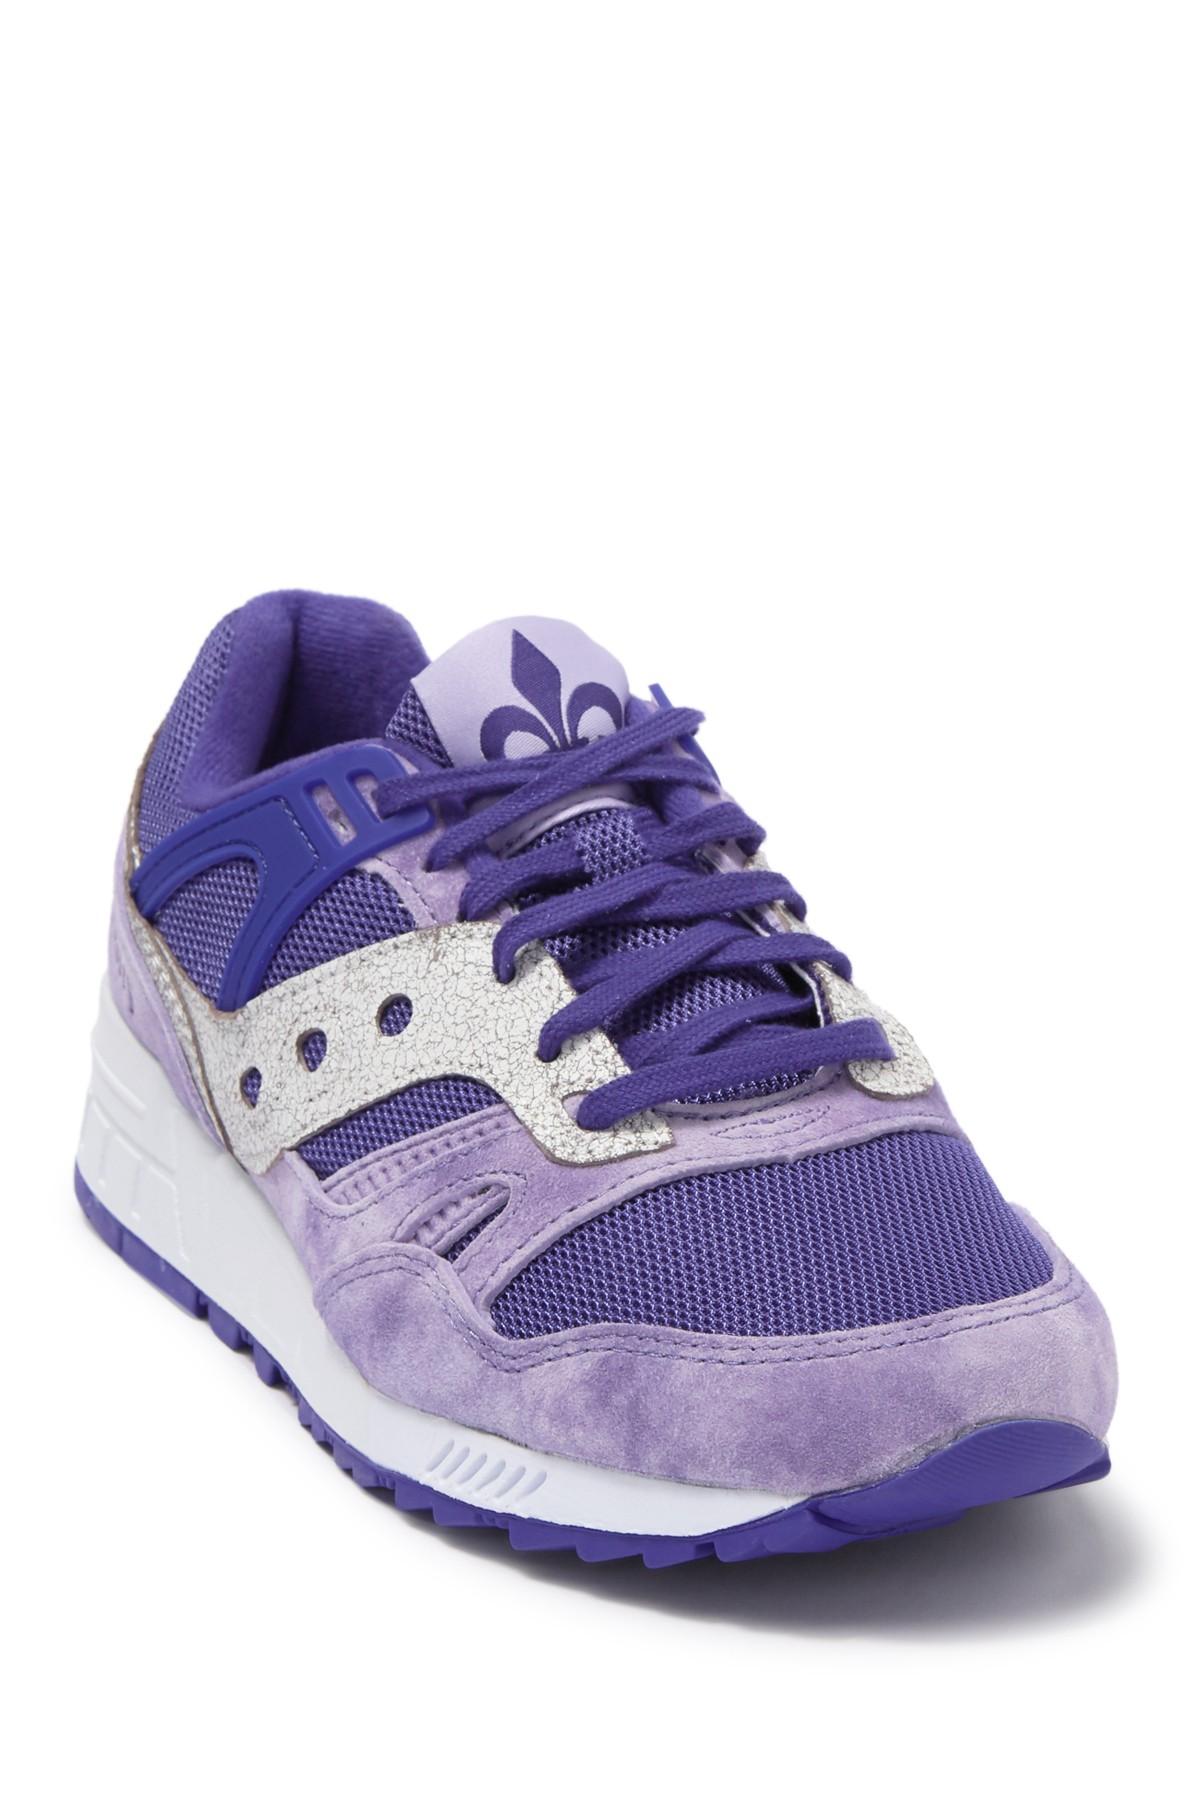 saucony shoes purple